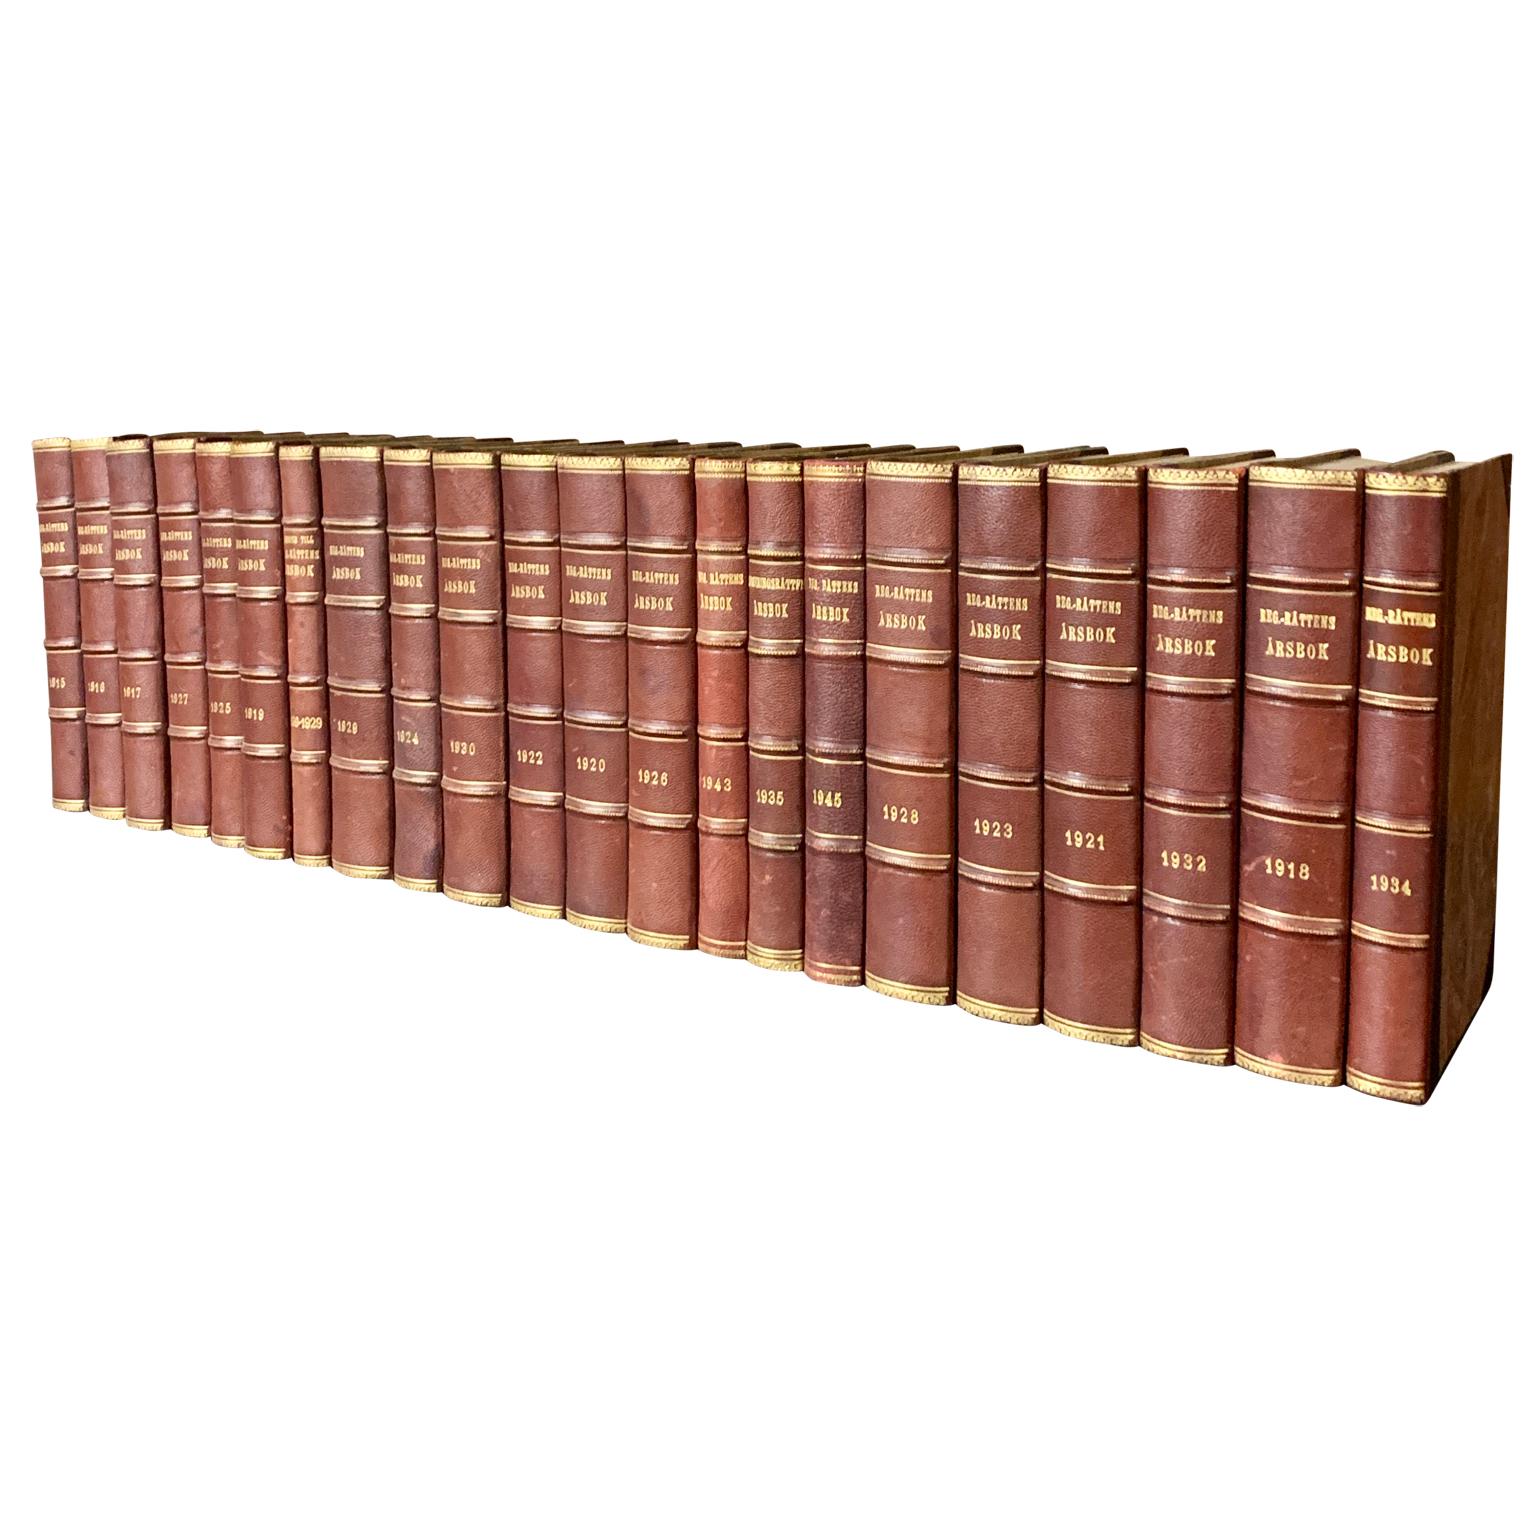 Eine Sammlung von 22 schwedischen dekorativen, antiken, in Leder gebundenen Bibliotheksbüchern.
Die Bücher sind in ledergebundene Einbände mit einer Auswahl an warmen Farbtönen und Blattgoldprägung gehüllt.
Das horizontale Maß der Collection'S ist